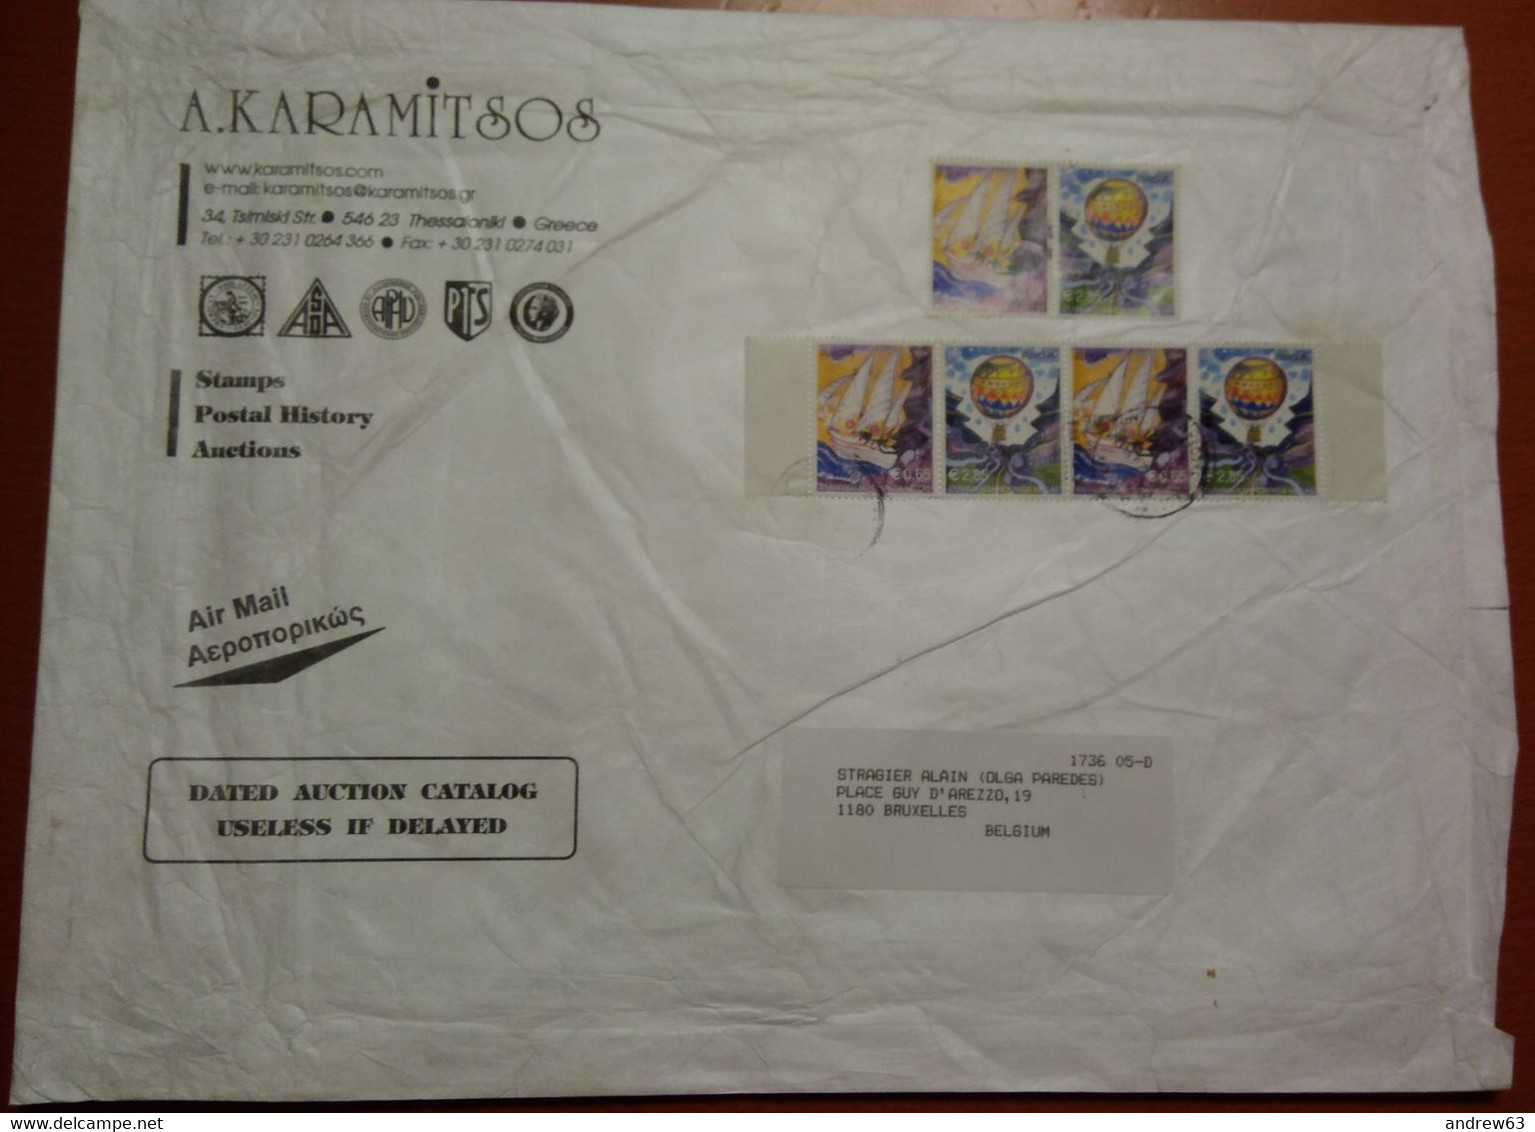 GRECIA - GREECE - GRECE - GRIECHENLAND - 2004 - 6 Stamps Europa Cept - Big Envelope - Viaggiata Da Thessaloniki Per Brux - Covers & Documents